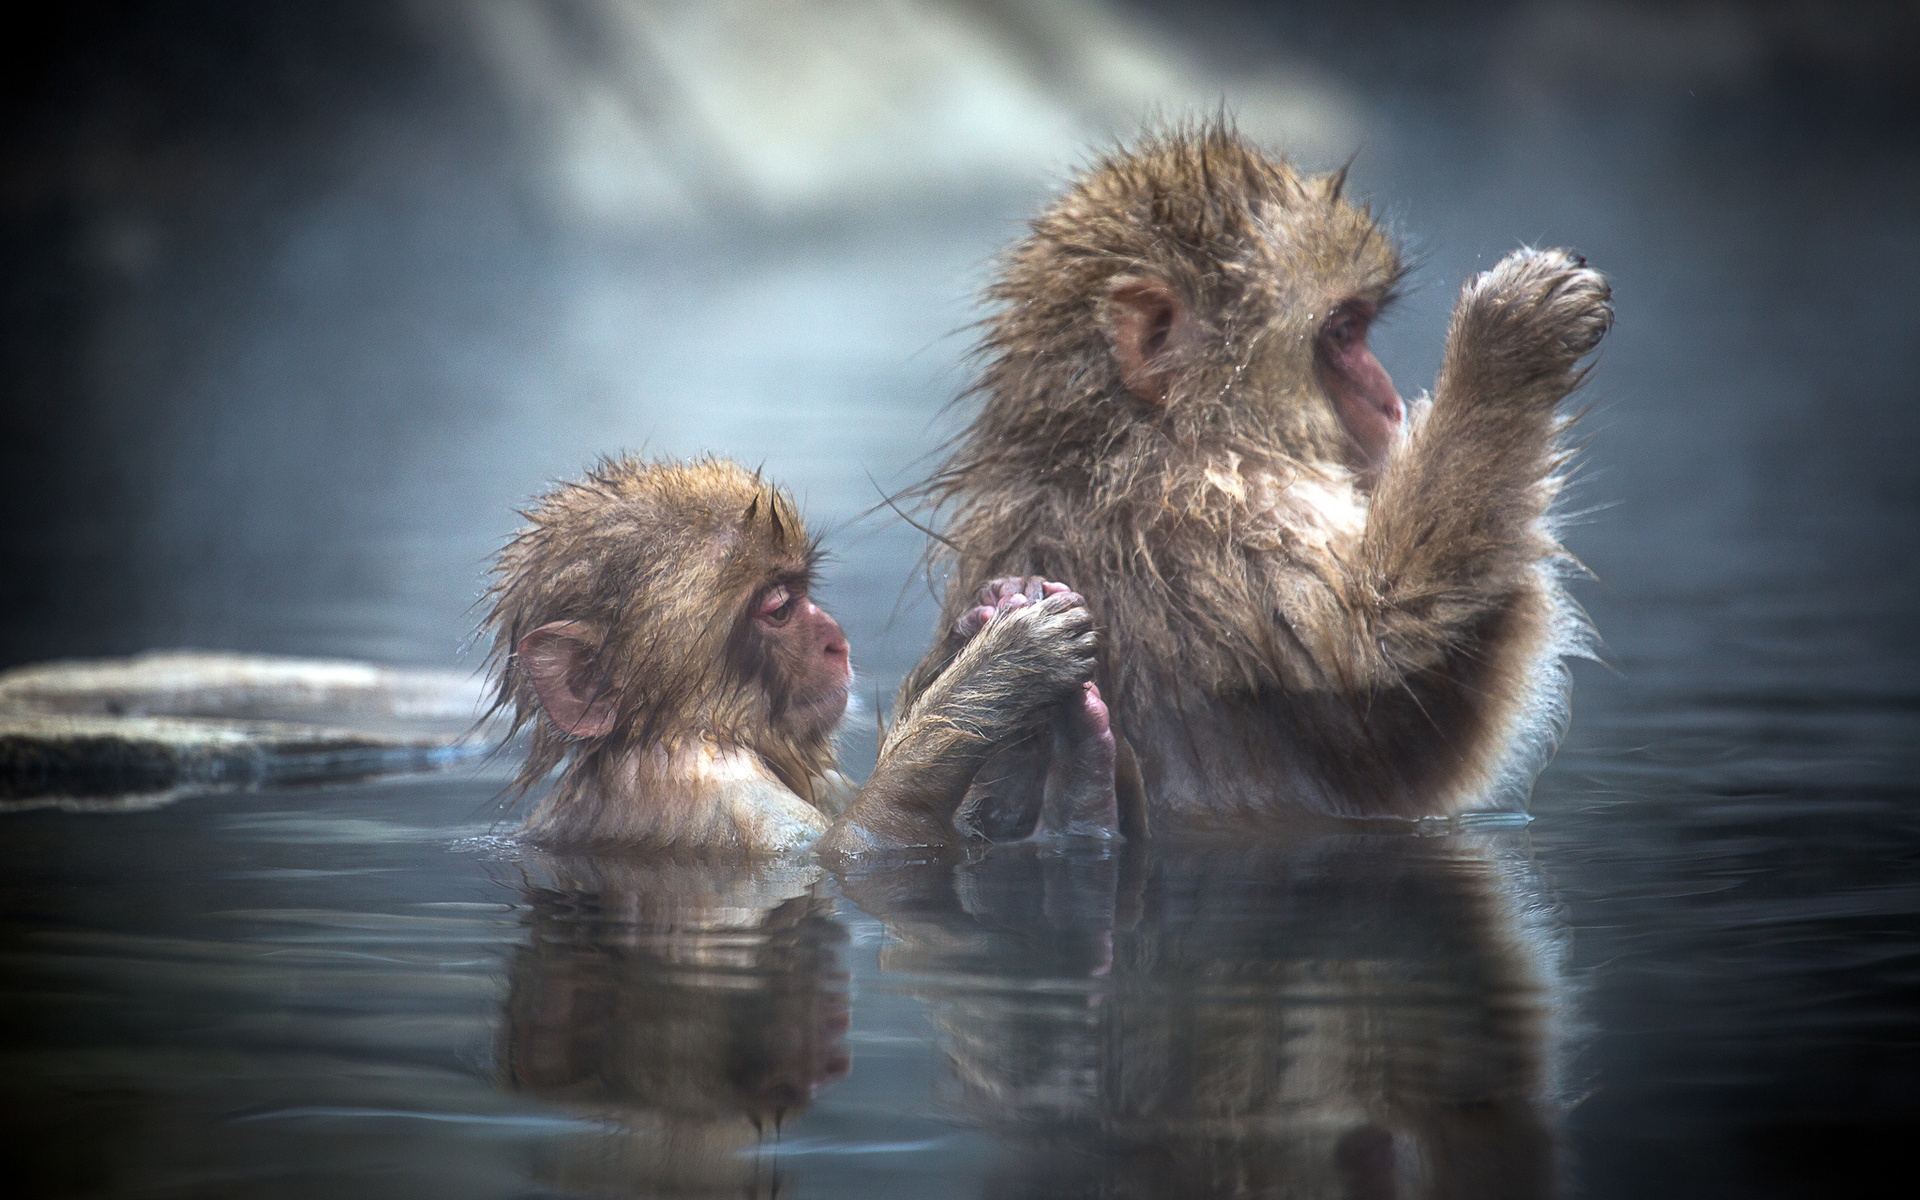 Группа обезьяны в теплой воде слушать